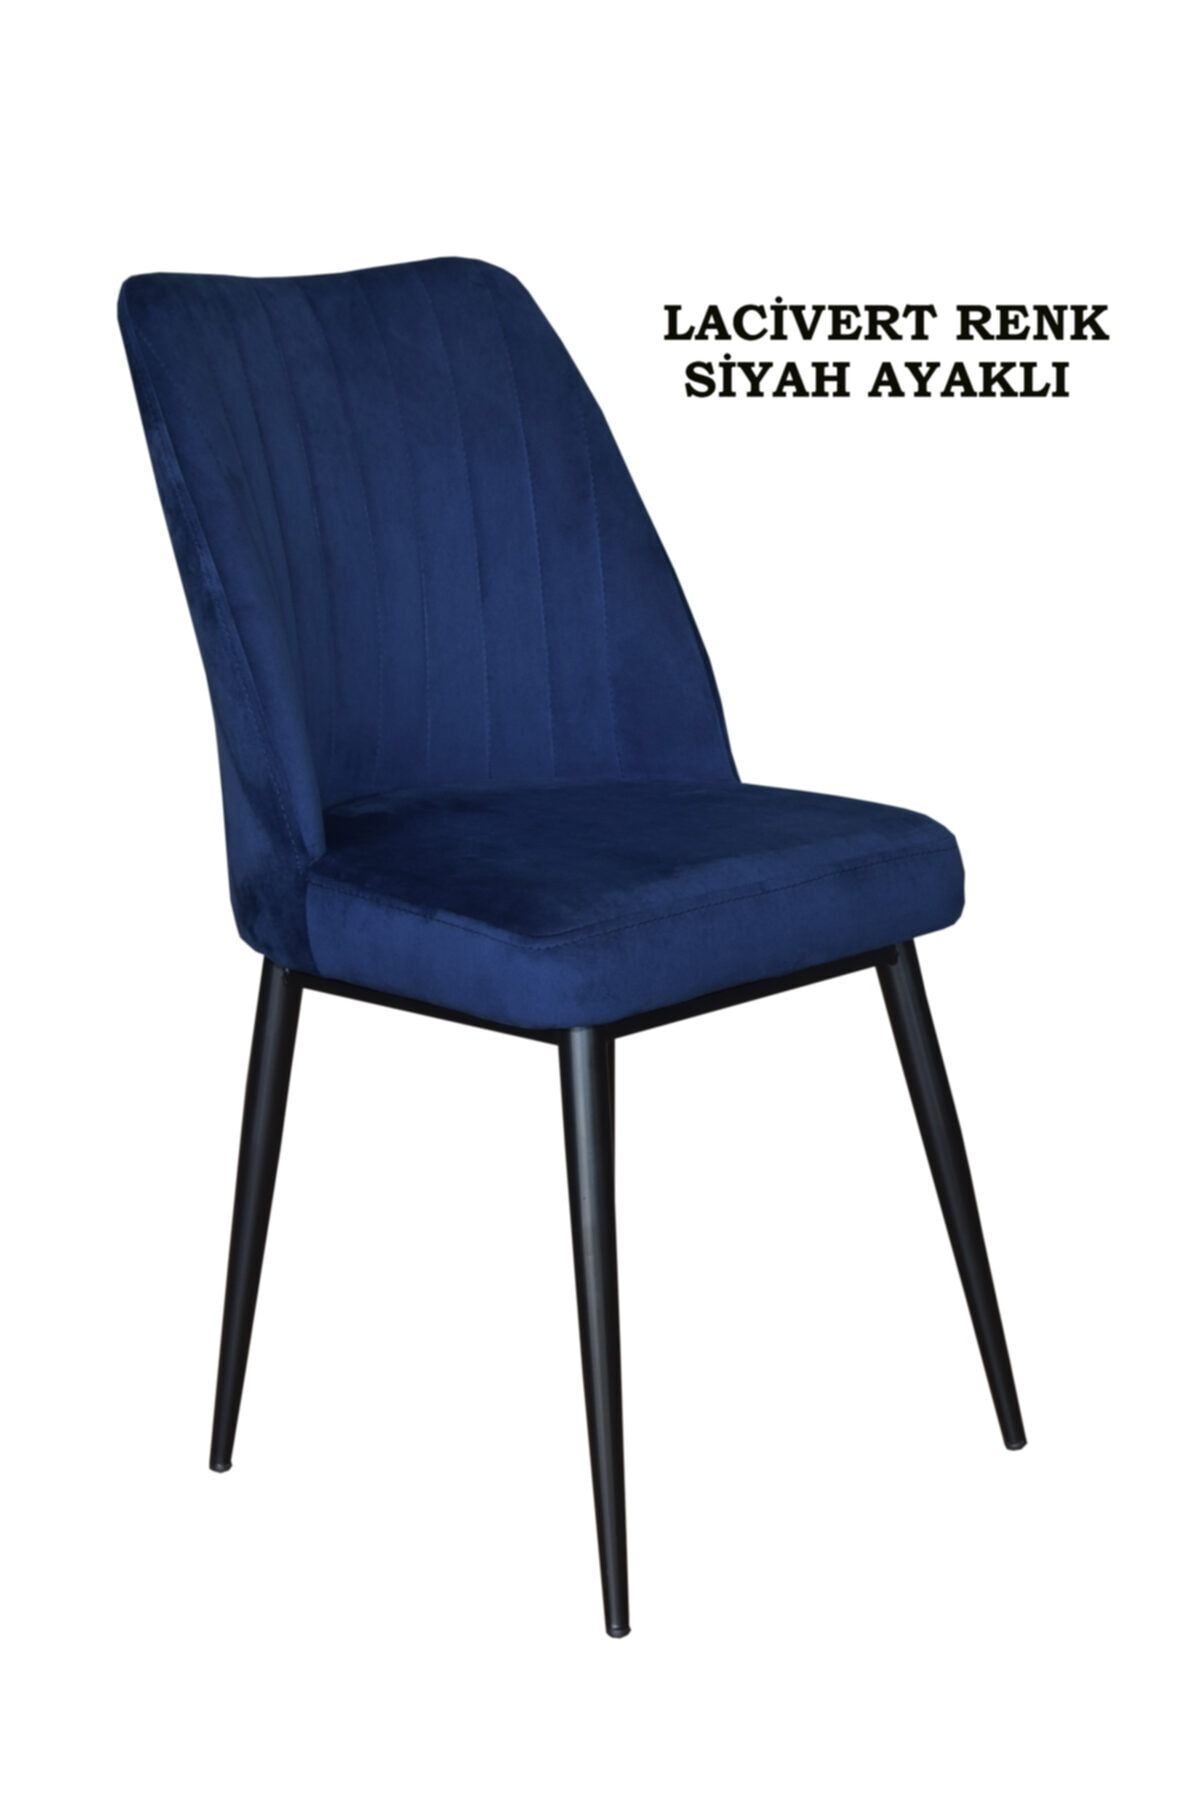 Ankhira Elit Sandalye, Mutfak Ve Salon Sandalyesi, Silinebilir Lacivert Renk Kumaş, Siyah Ayaklı